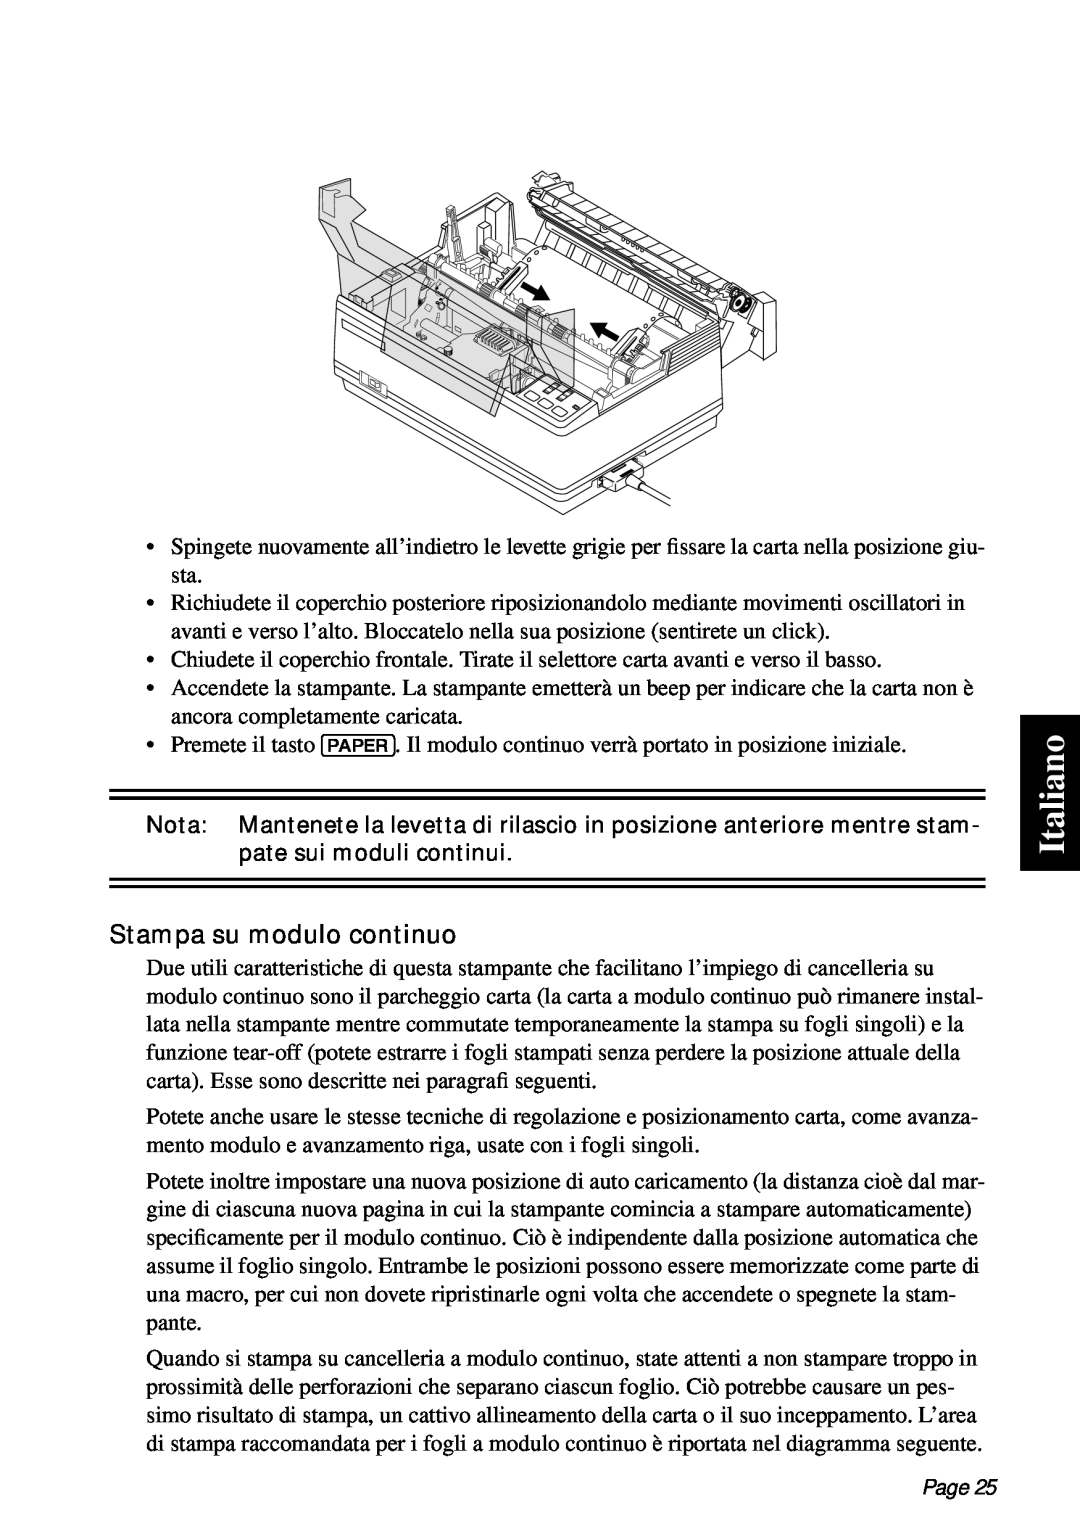 Star Micronics PT-10Q user manual Italiano, Stampa su modulo continuo, Page 